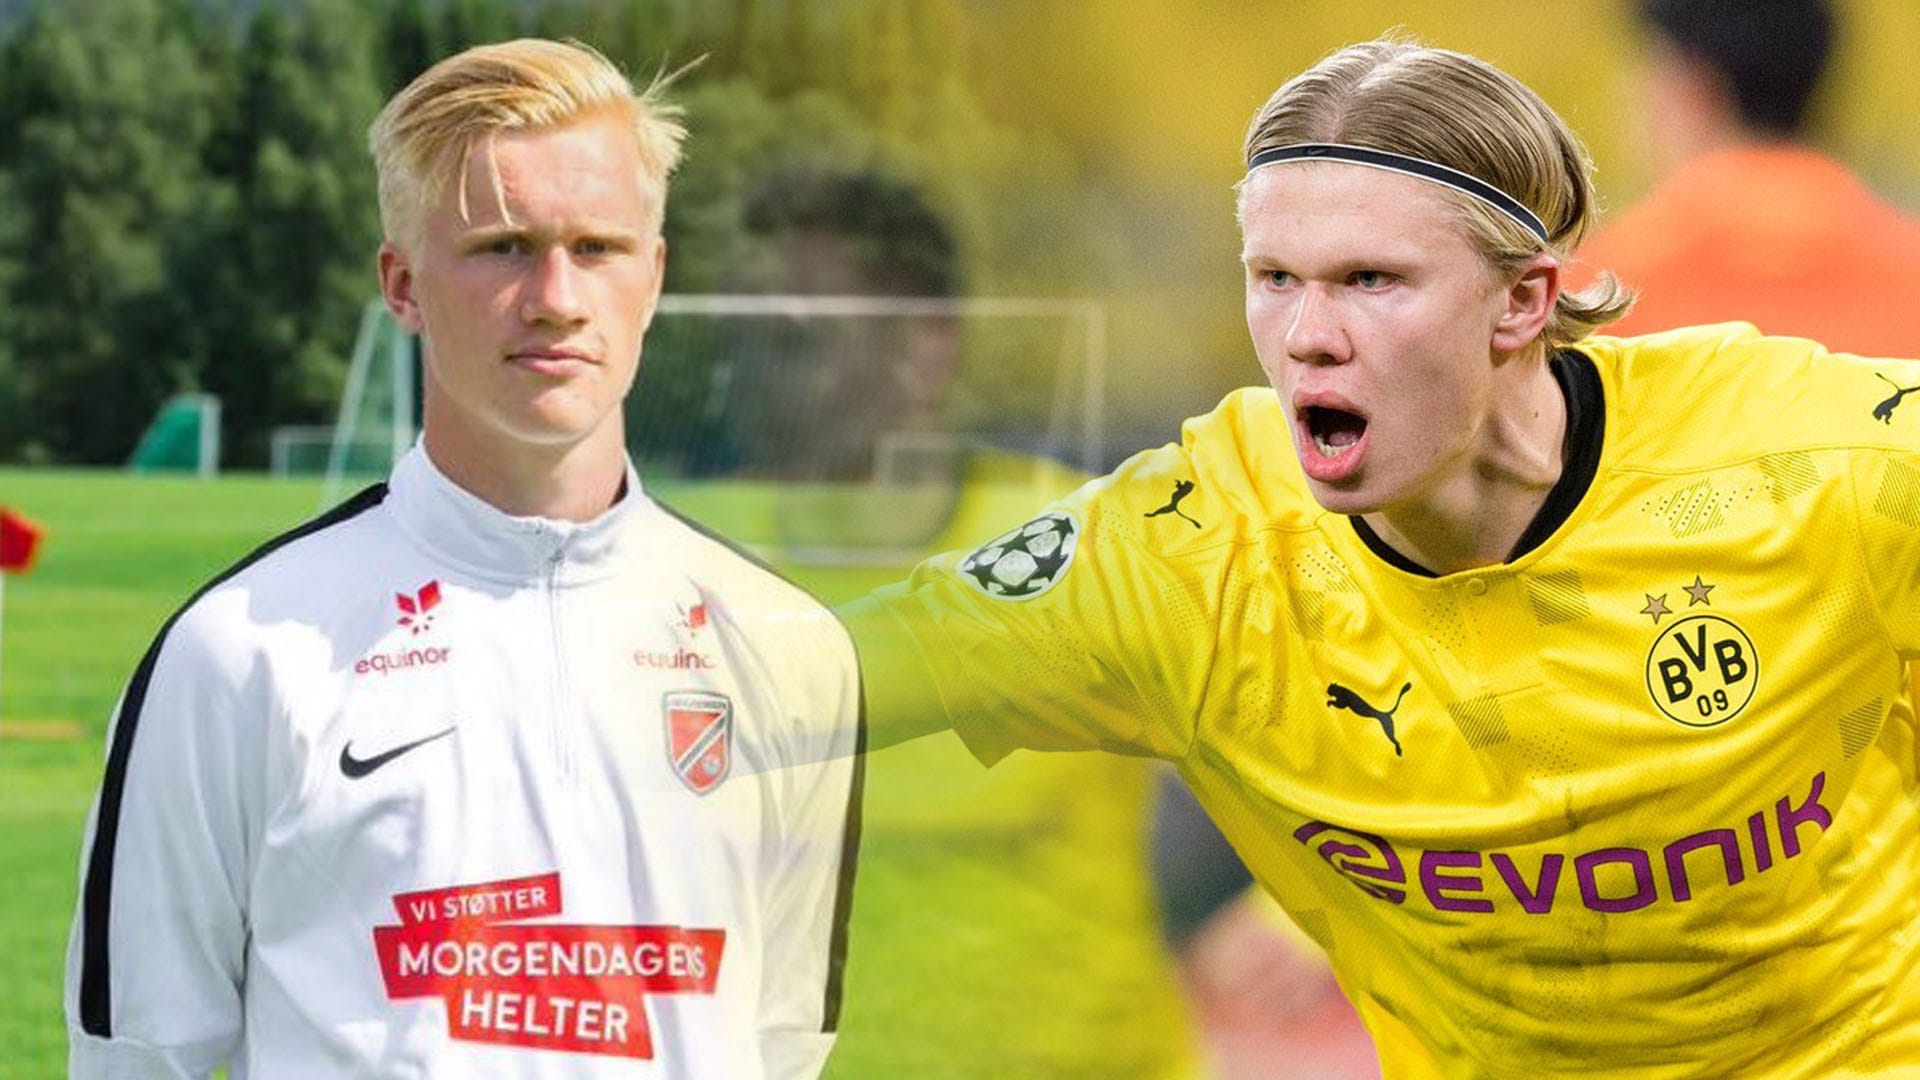 Albert Braut Tjaaland si stejně jako jeho bratranec a současná hvězda Borussie Dortmund Erling Haaland vybral pro svůj rozvoj norský klub Molde. A zdá se, že mu toto prostředí svědčí.